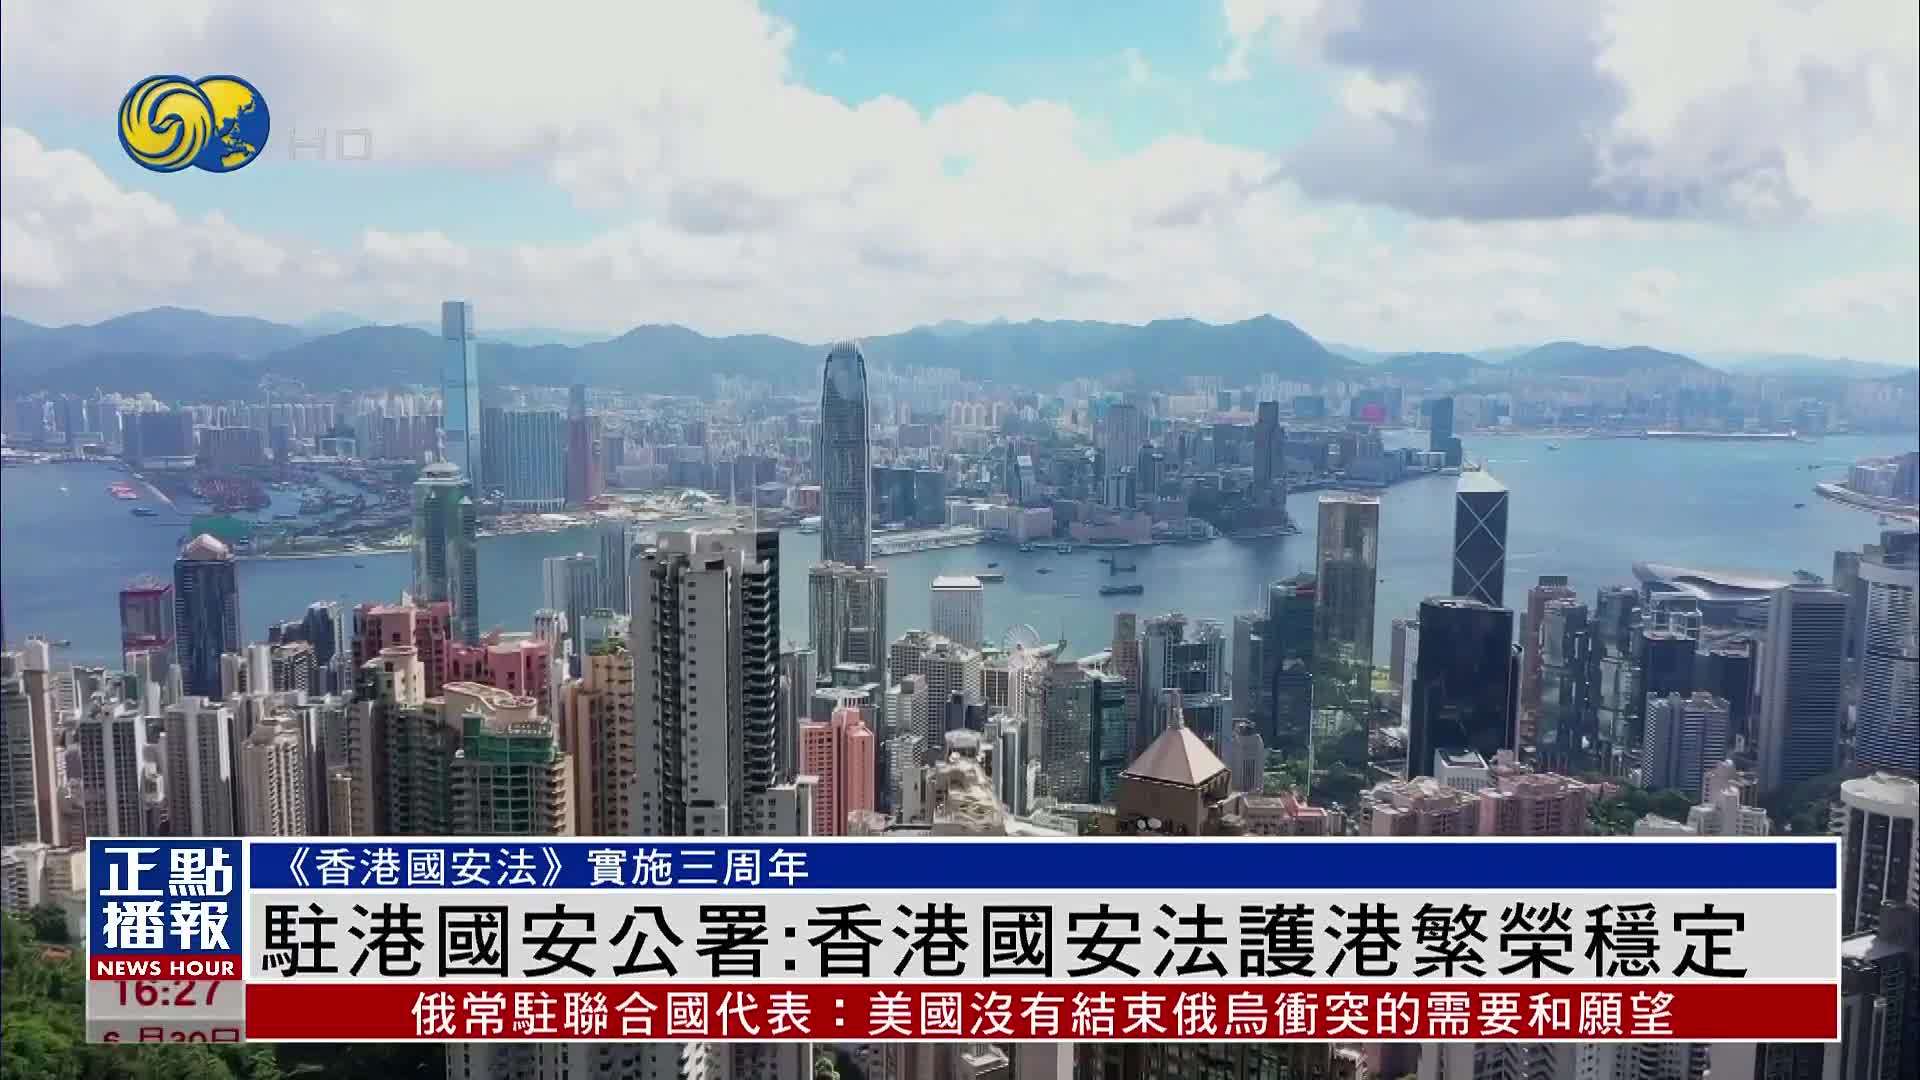 中央人民政府驻香港特别行政区维护国家安全公署在香港揭牌